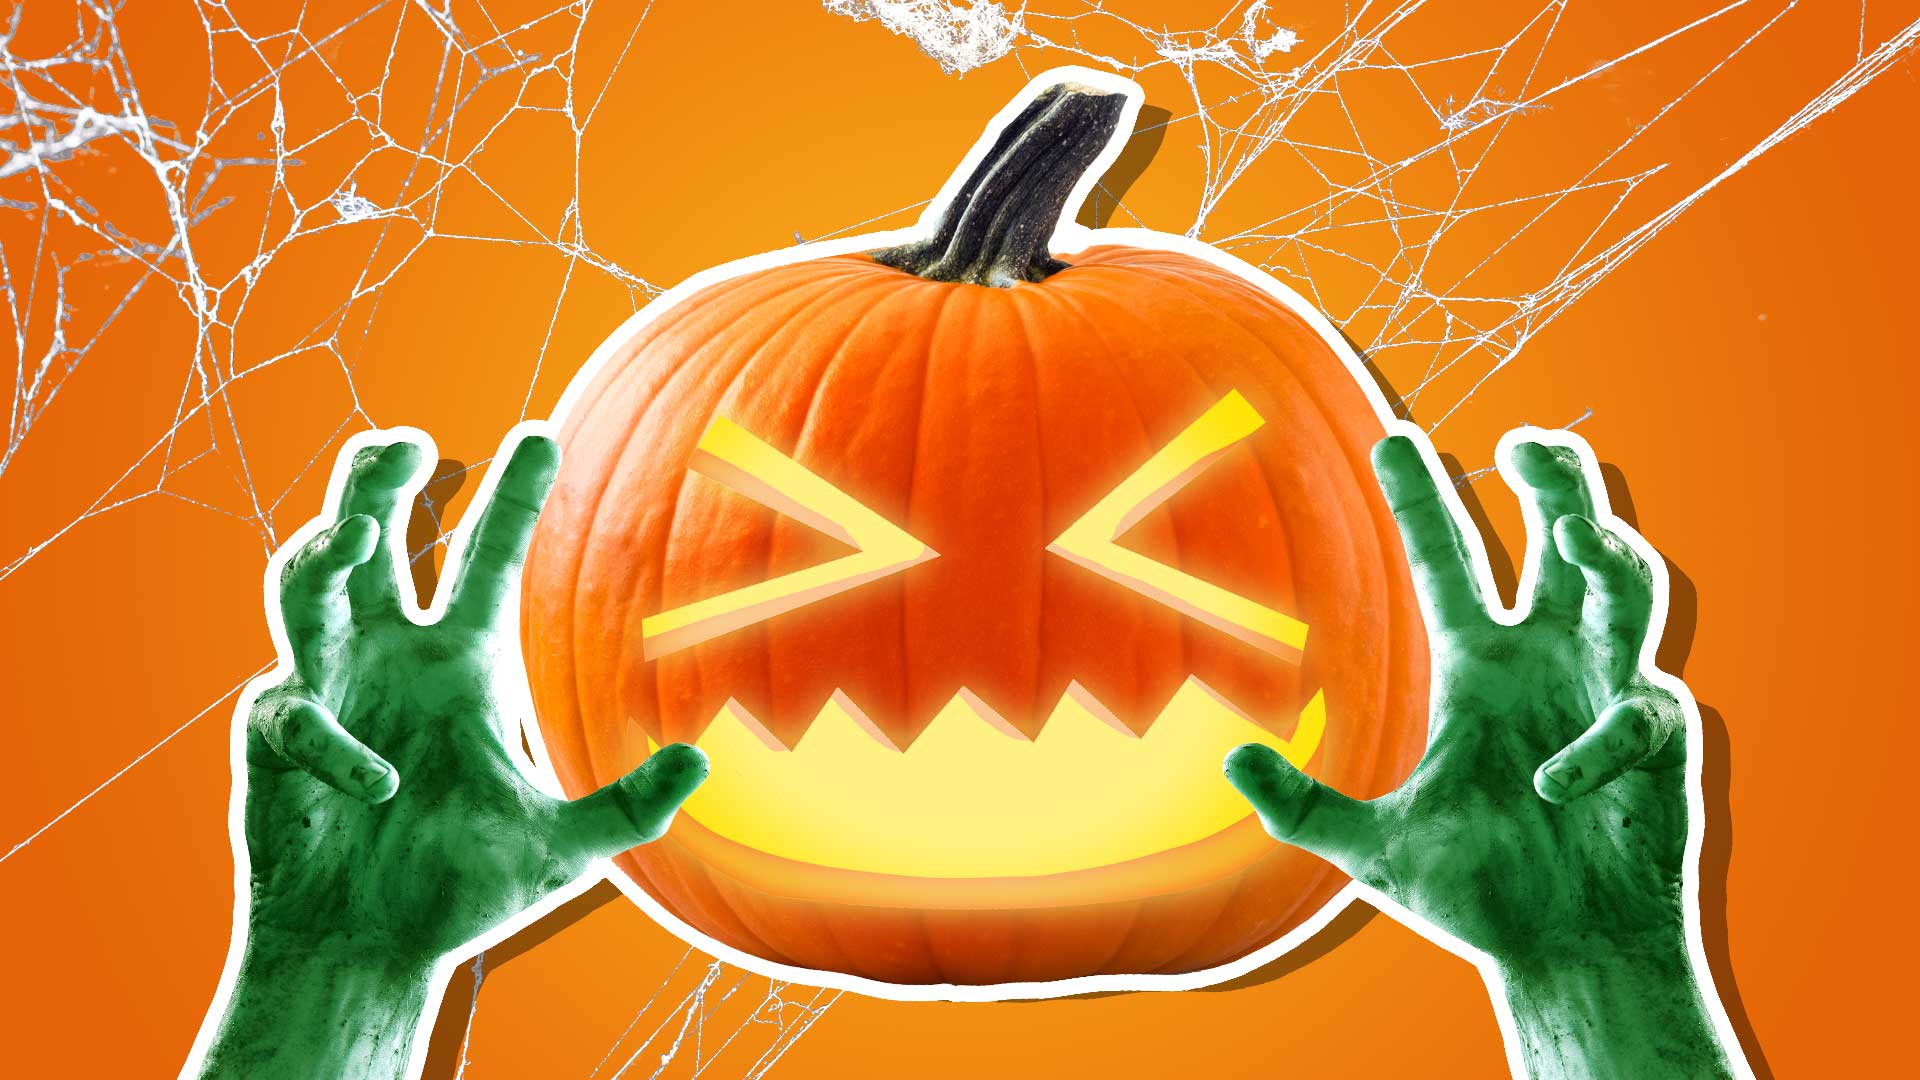 A scary Halloween pumpkin